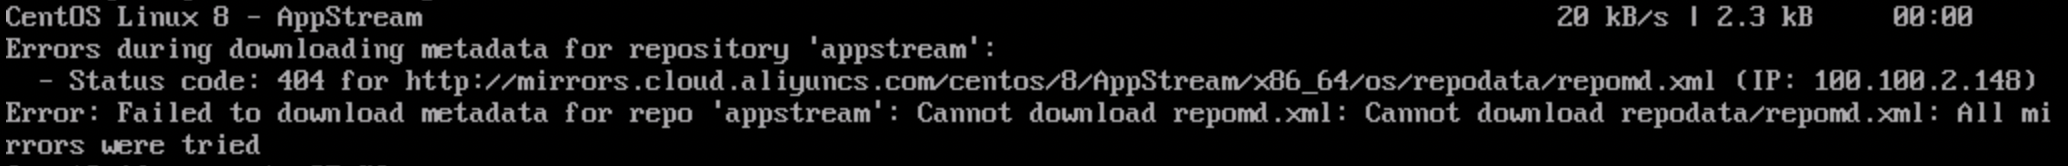 Error reported for CentOS 8